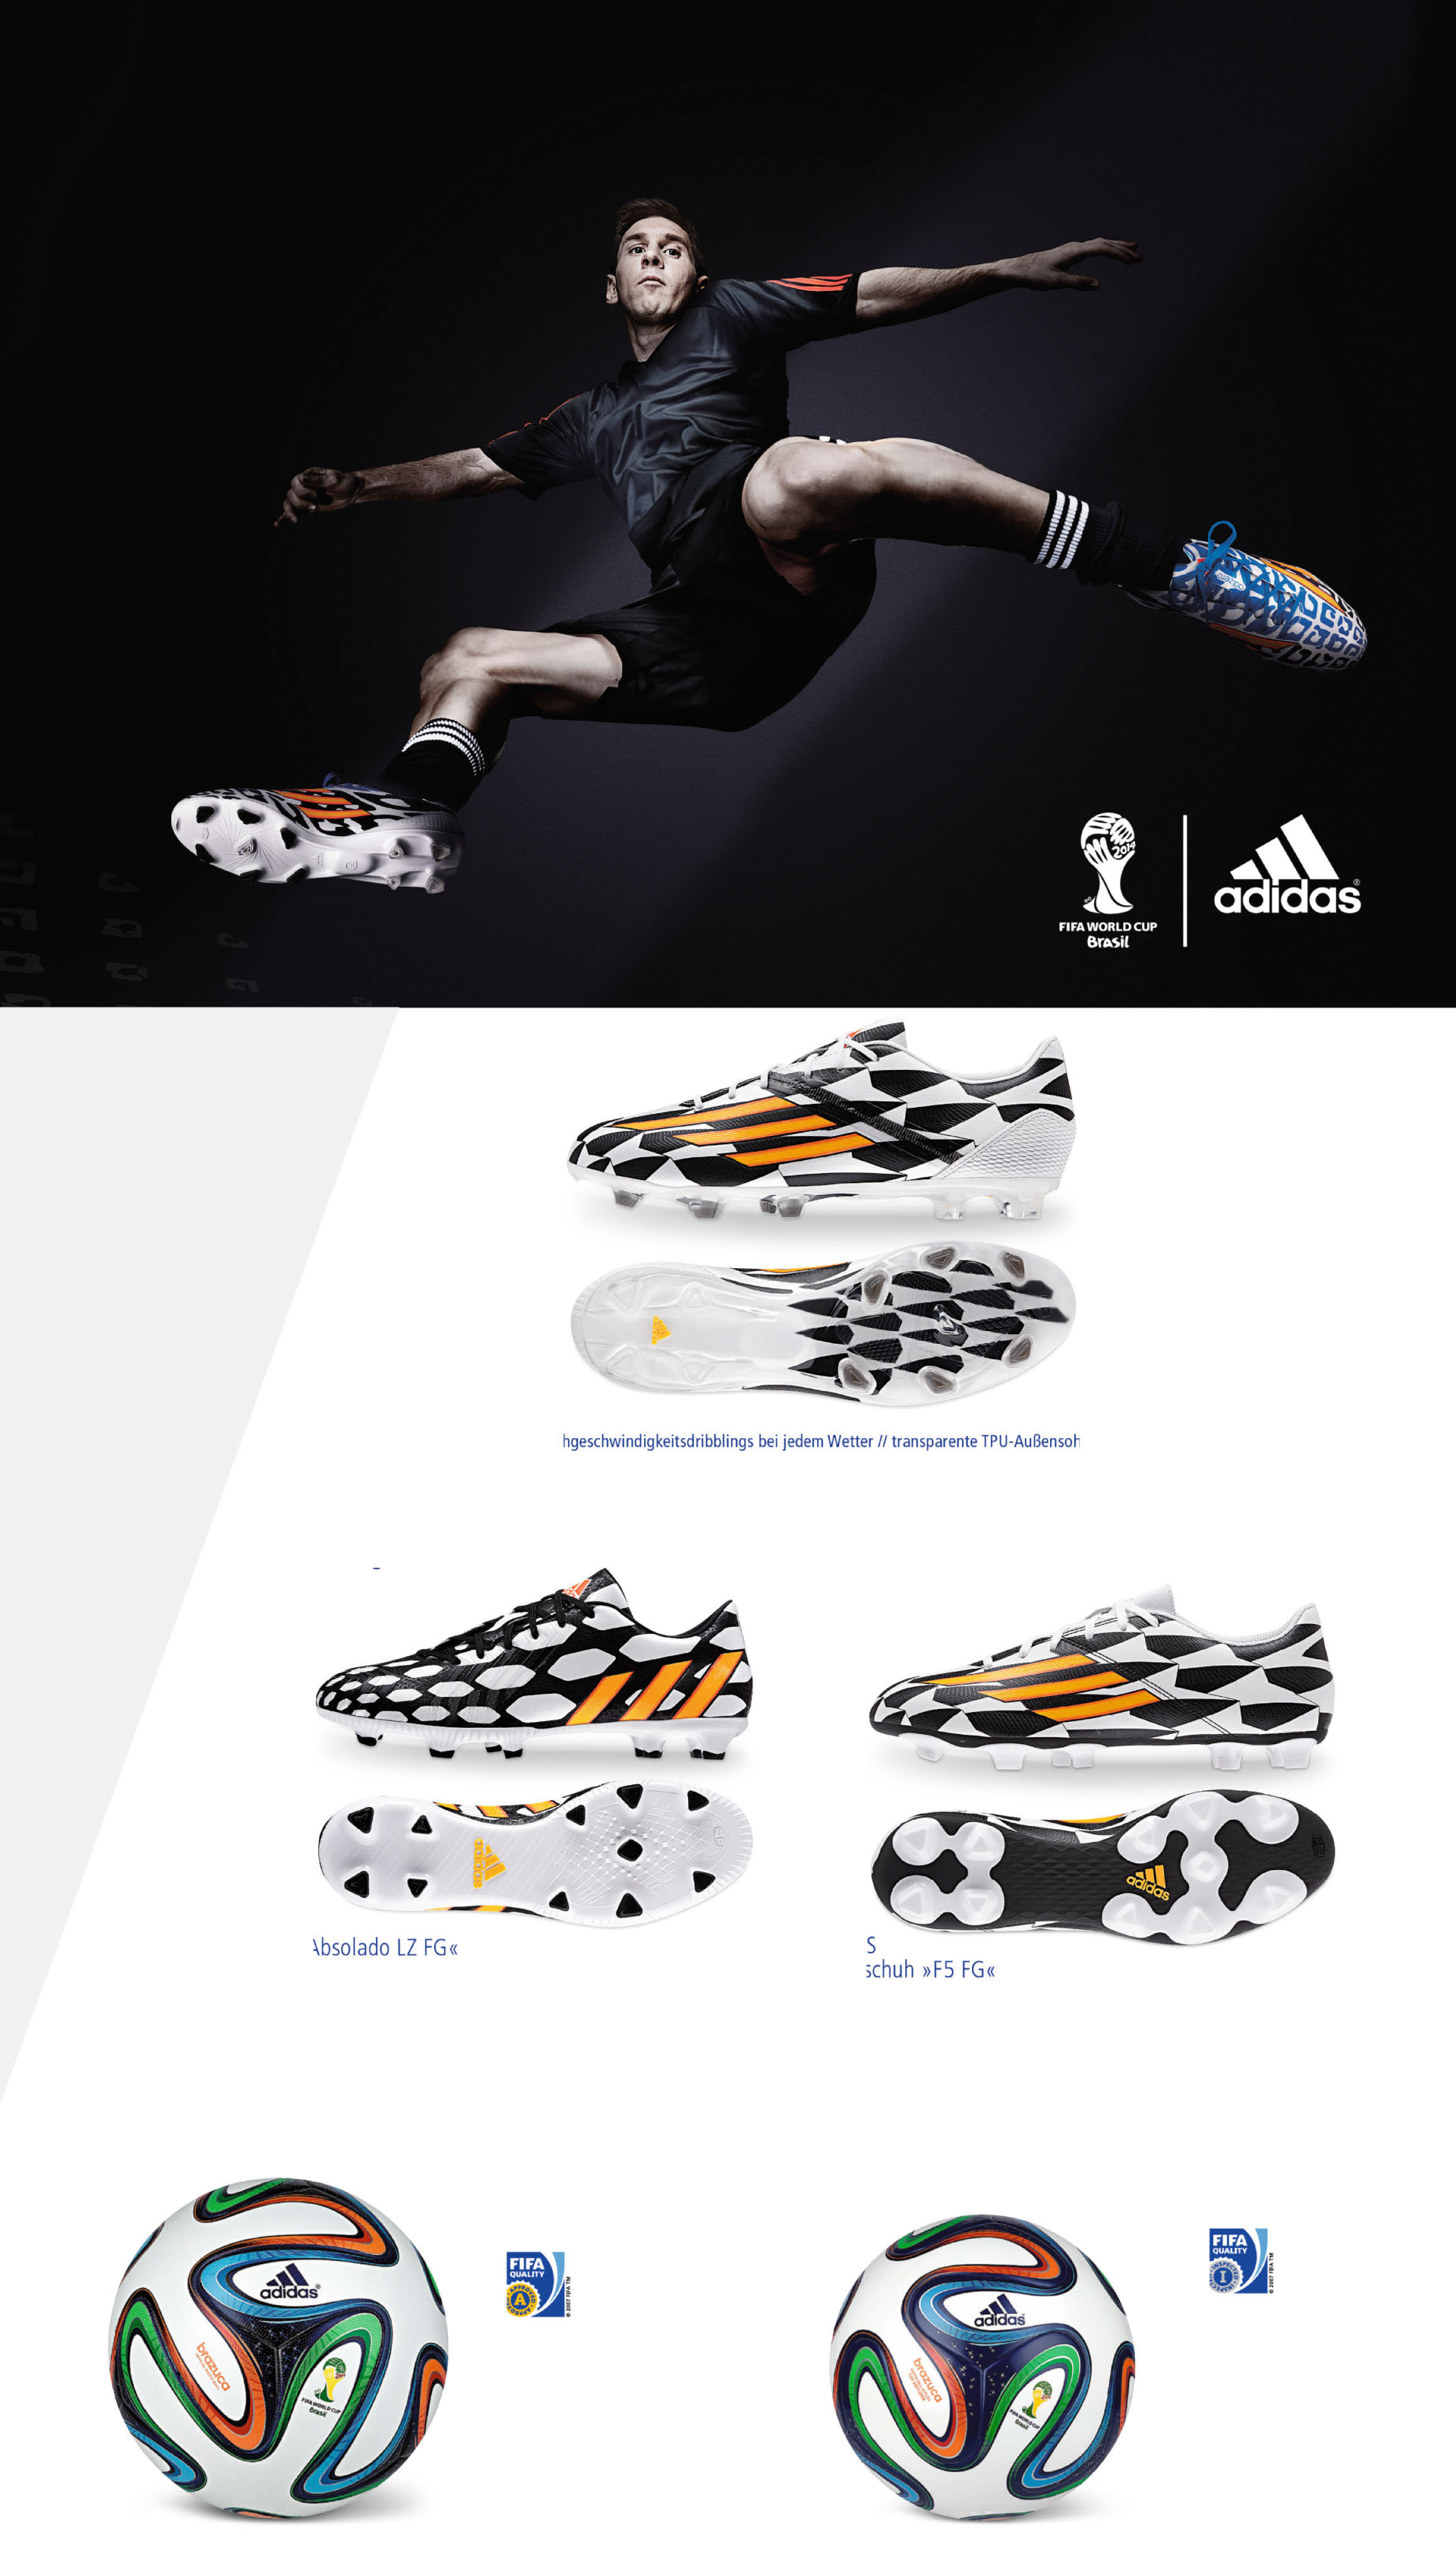 all in or nothing Lionel Messi Fußballschuh»F30 FG«DRIBBLETEX: 3-D-Grip-Textur für Hochgeschwindigkeitsdribblings bei jedem Wetter // transparente TPU-Außensohle // HYBRIDTOUCH 2.